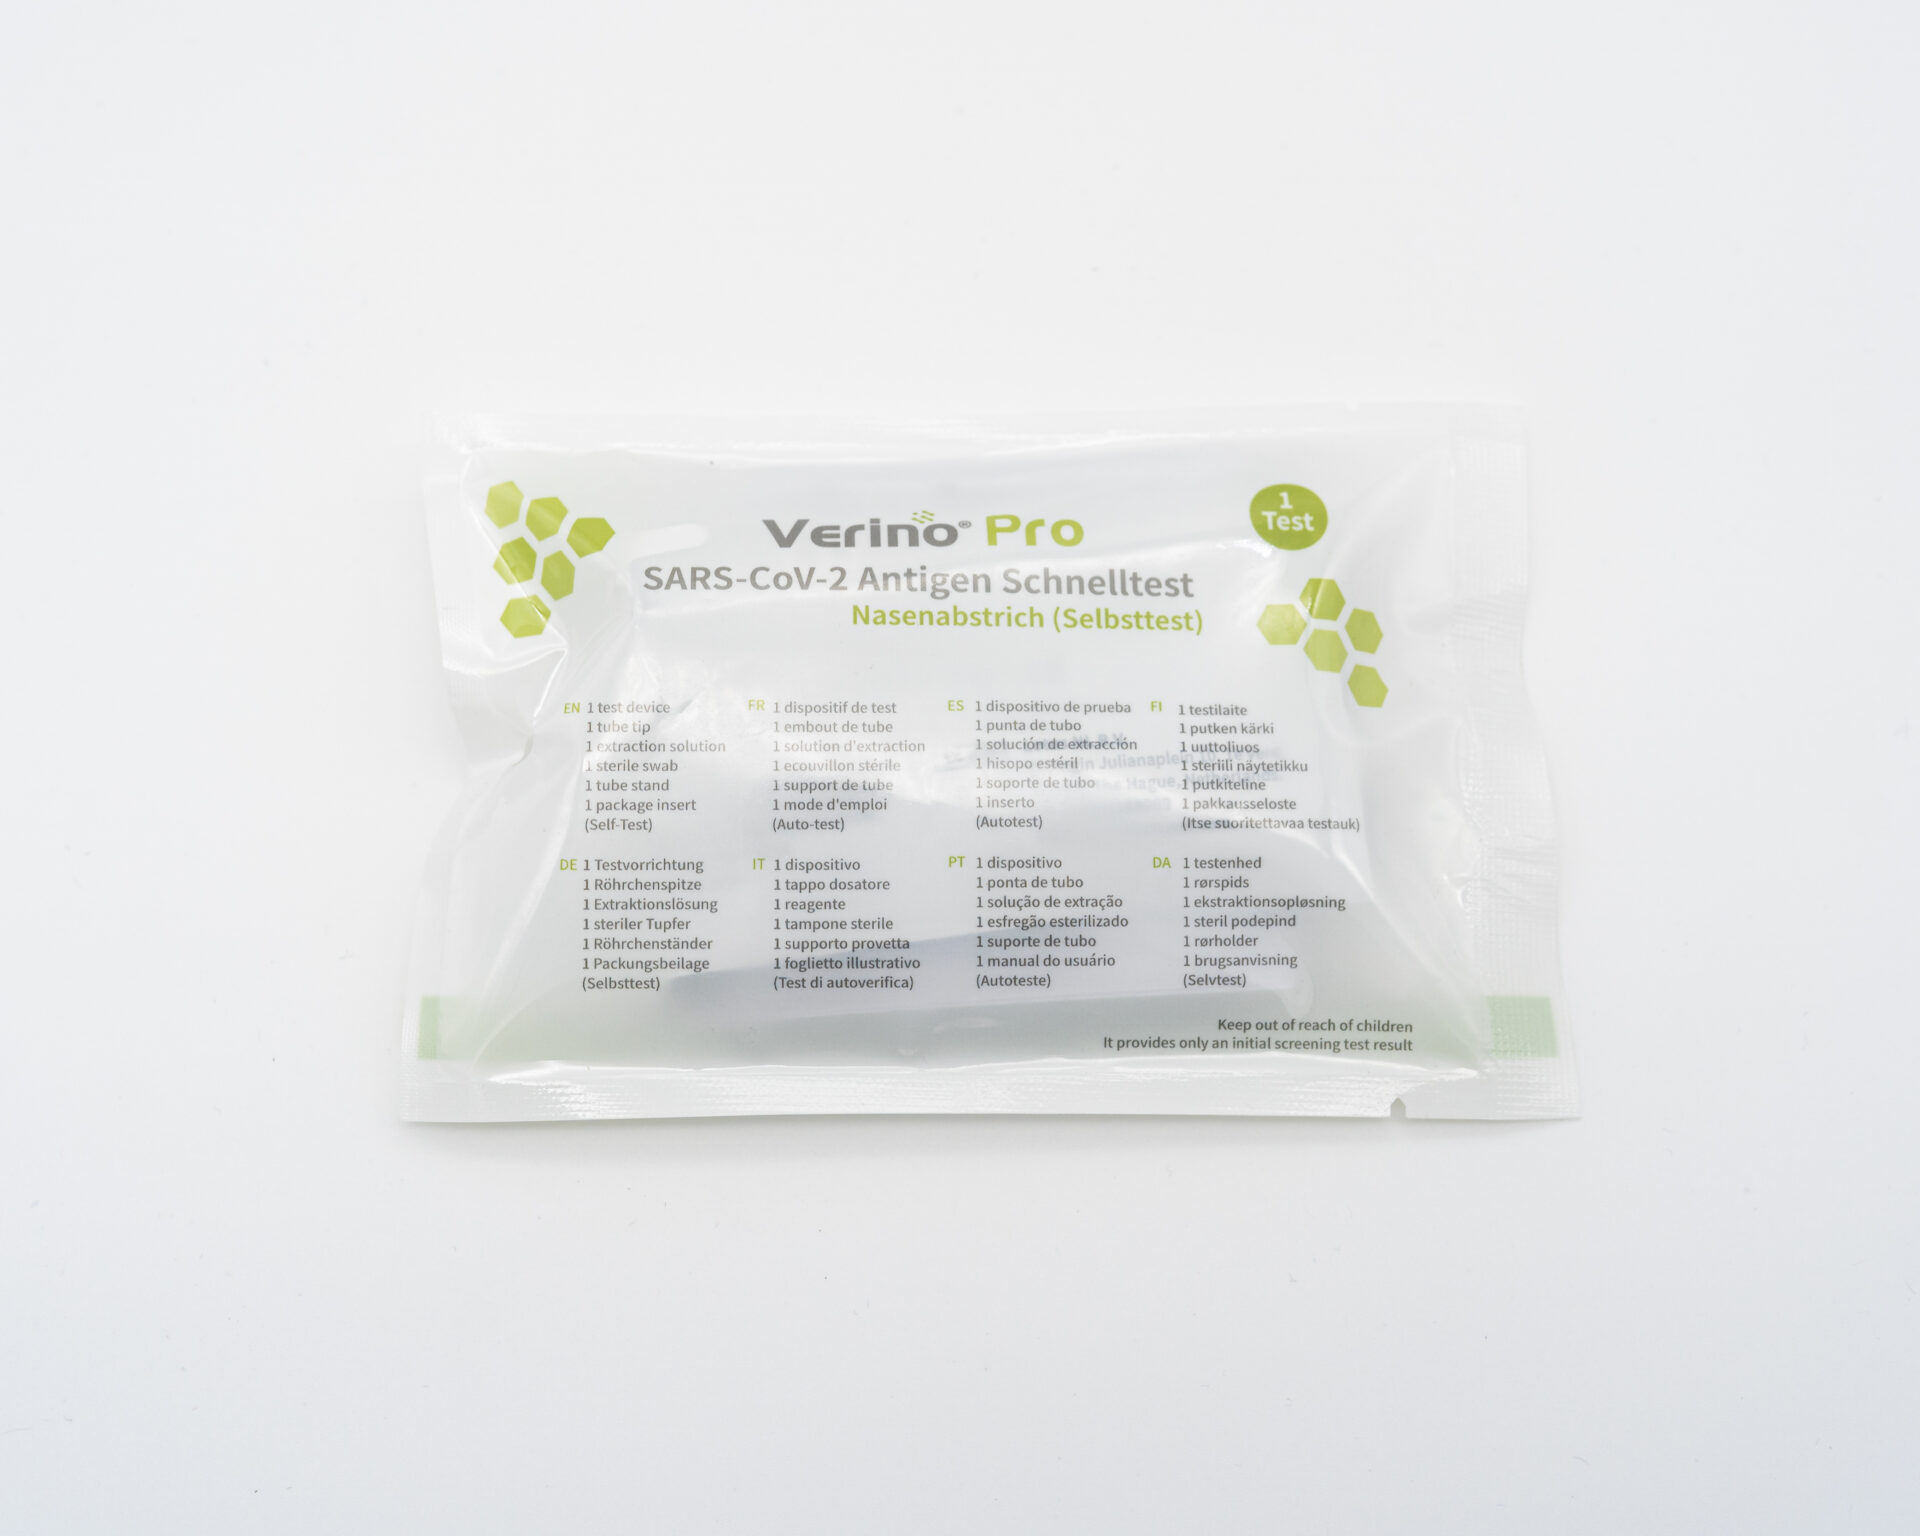 Verino® Pro SARS-CoV-2 Antigen Schnelltest Einzel Softpack